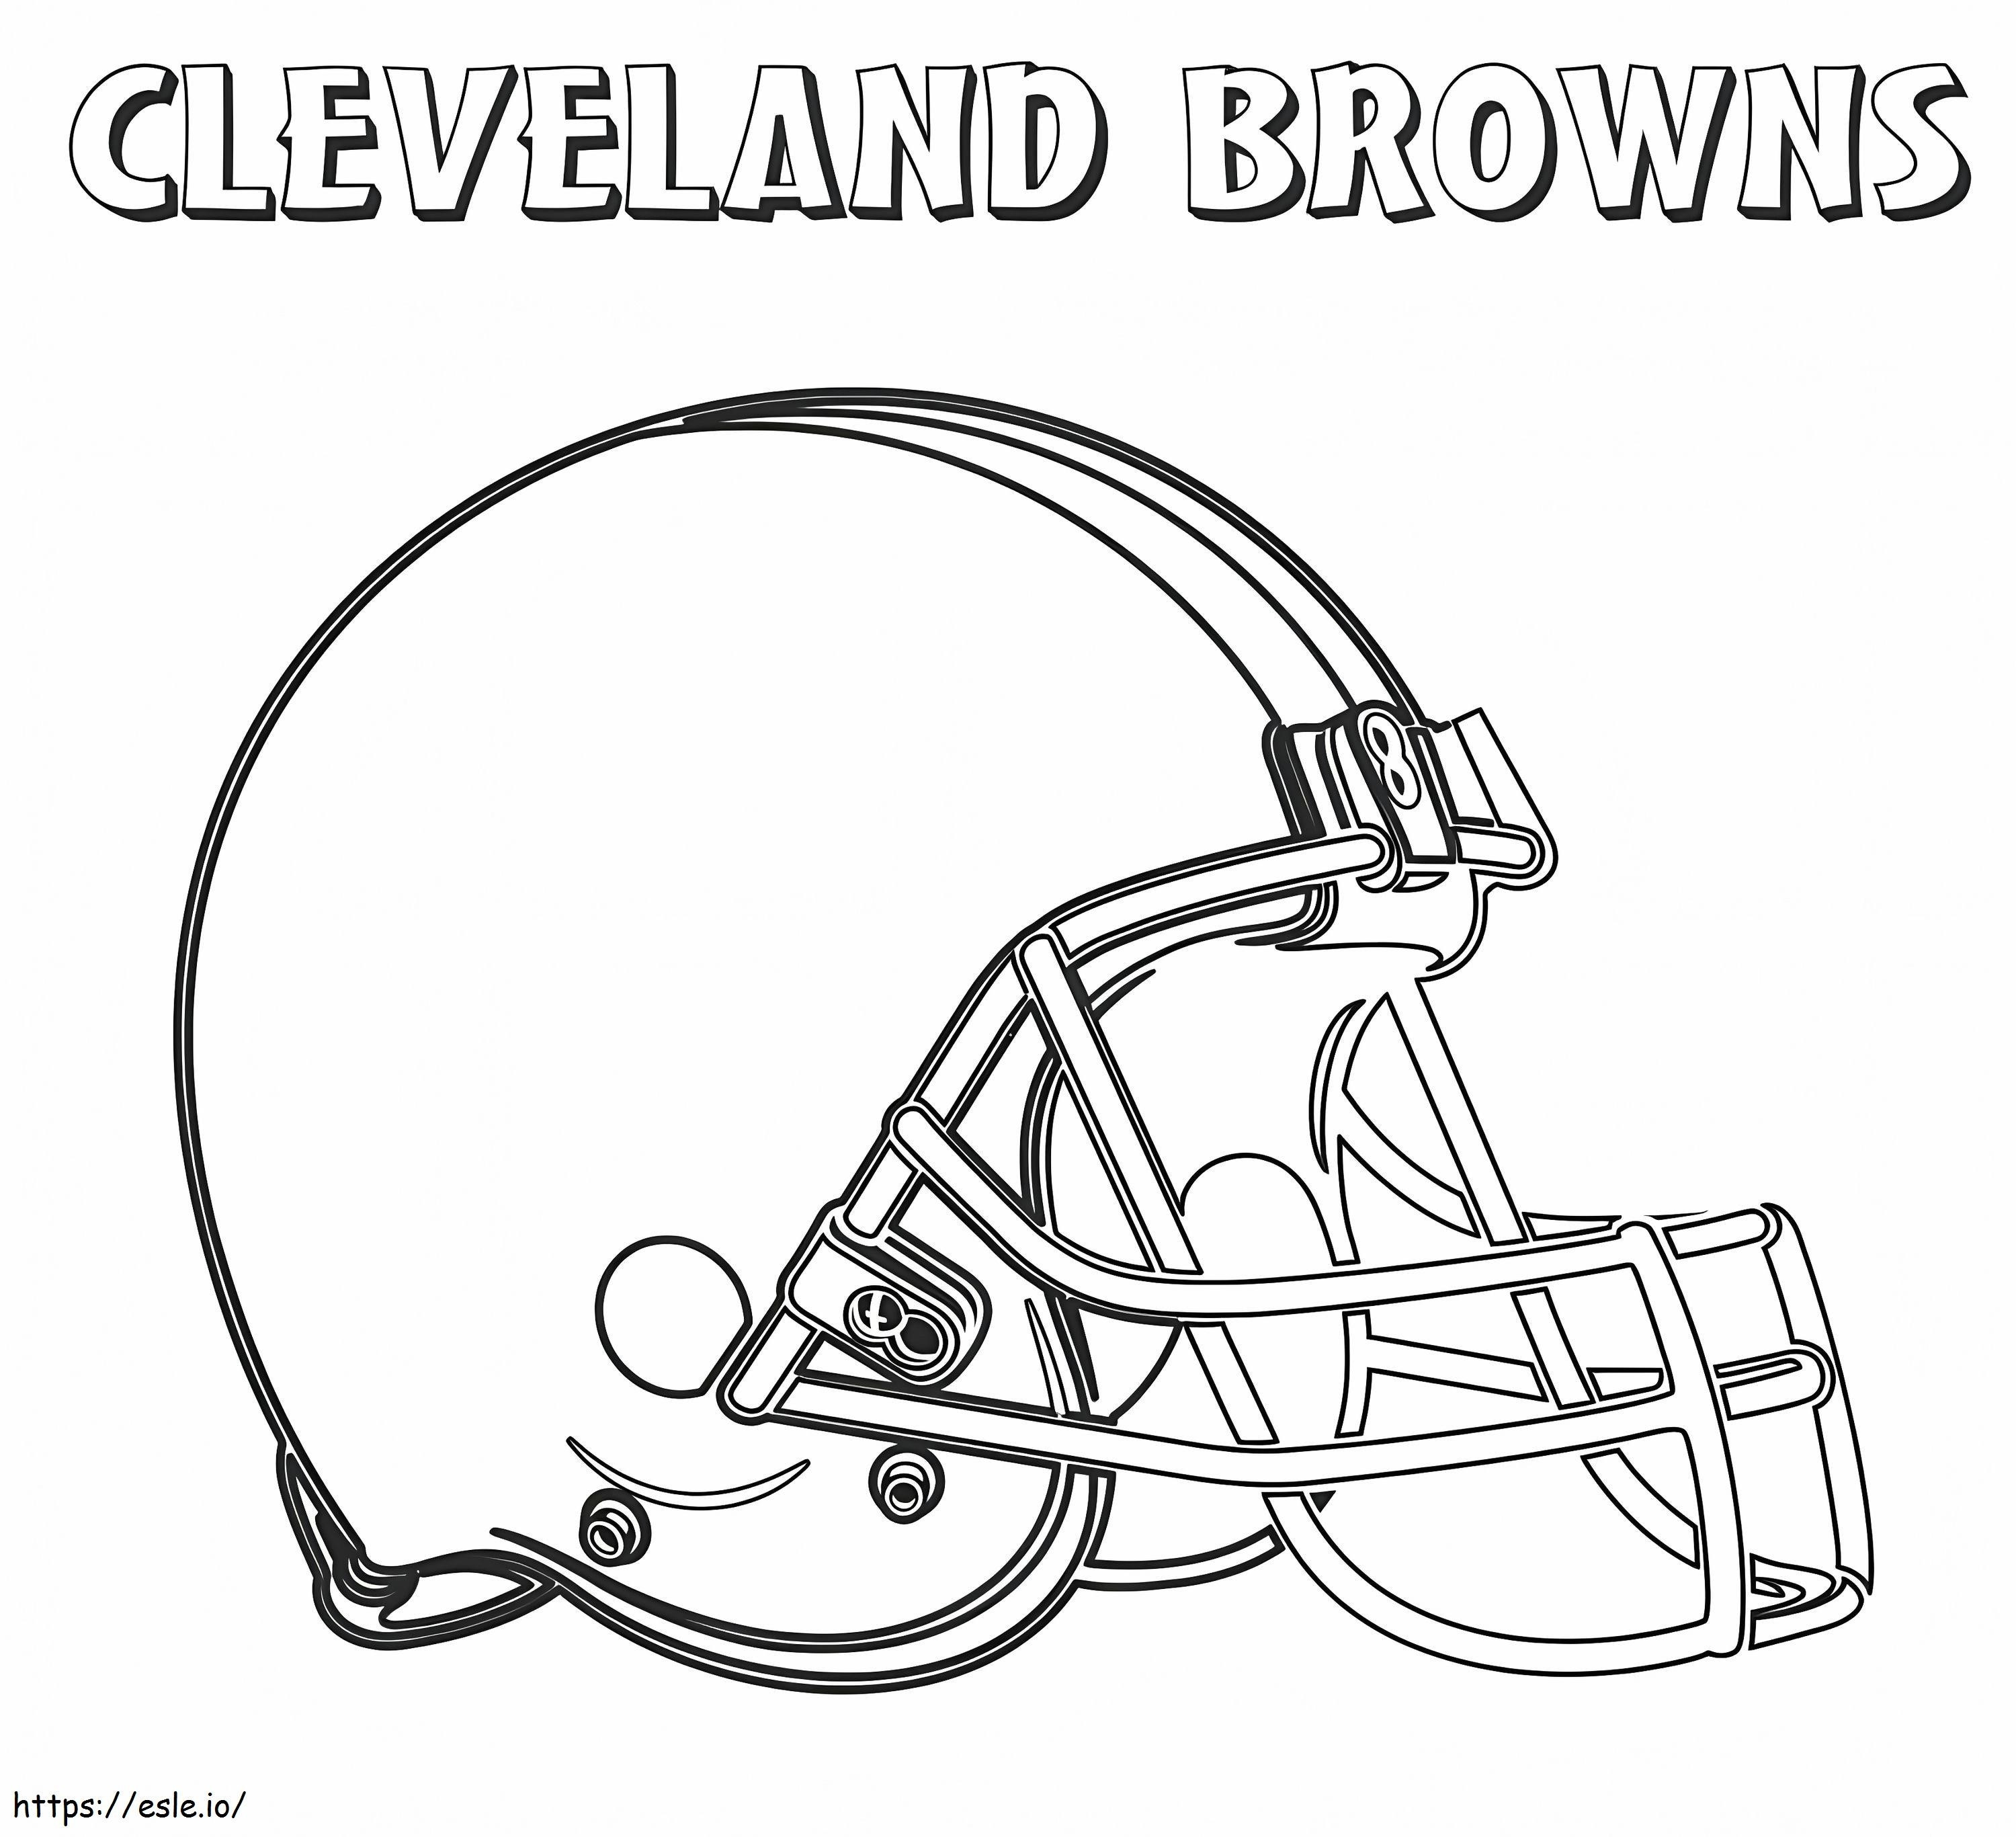 Cleveland Browns 1 ausmalbilder